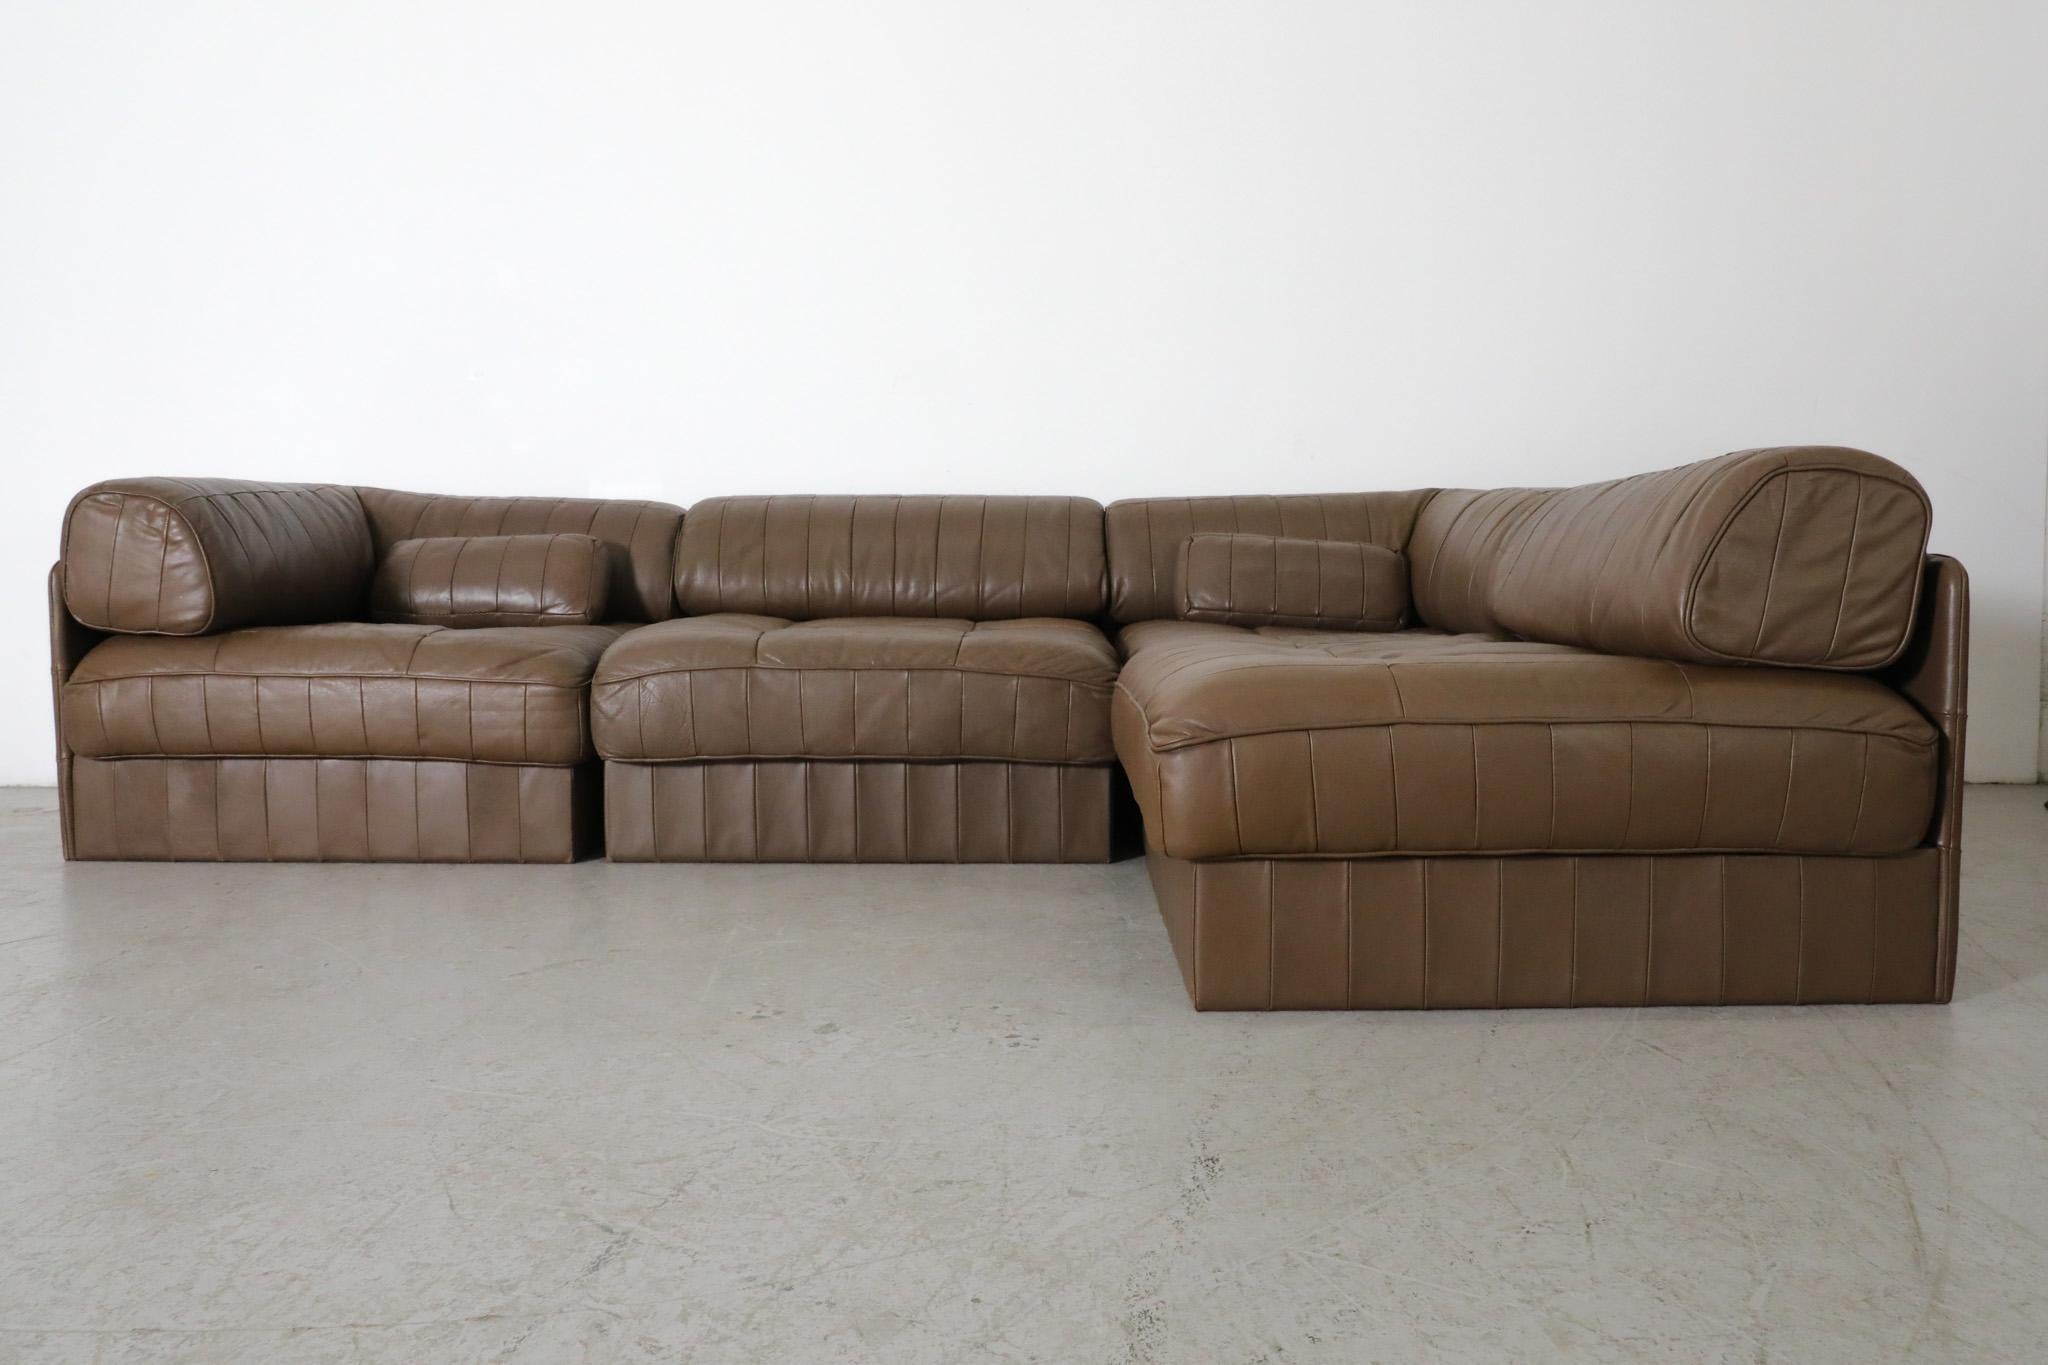 Swiss De Sede 'DS88' Modular Sofa in Brown Leather, Switzerland 1970s